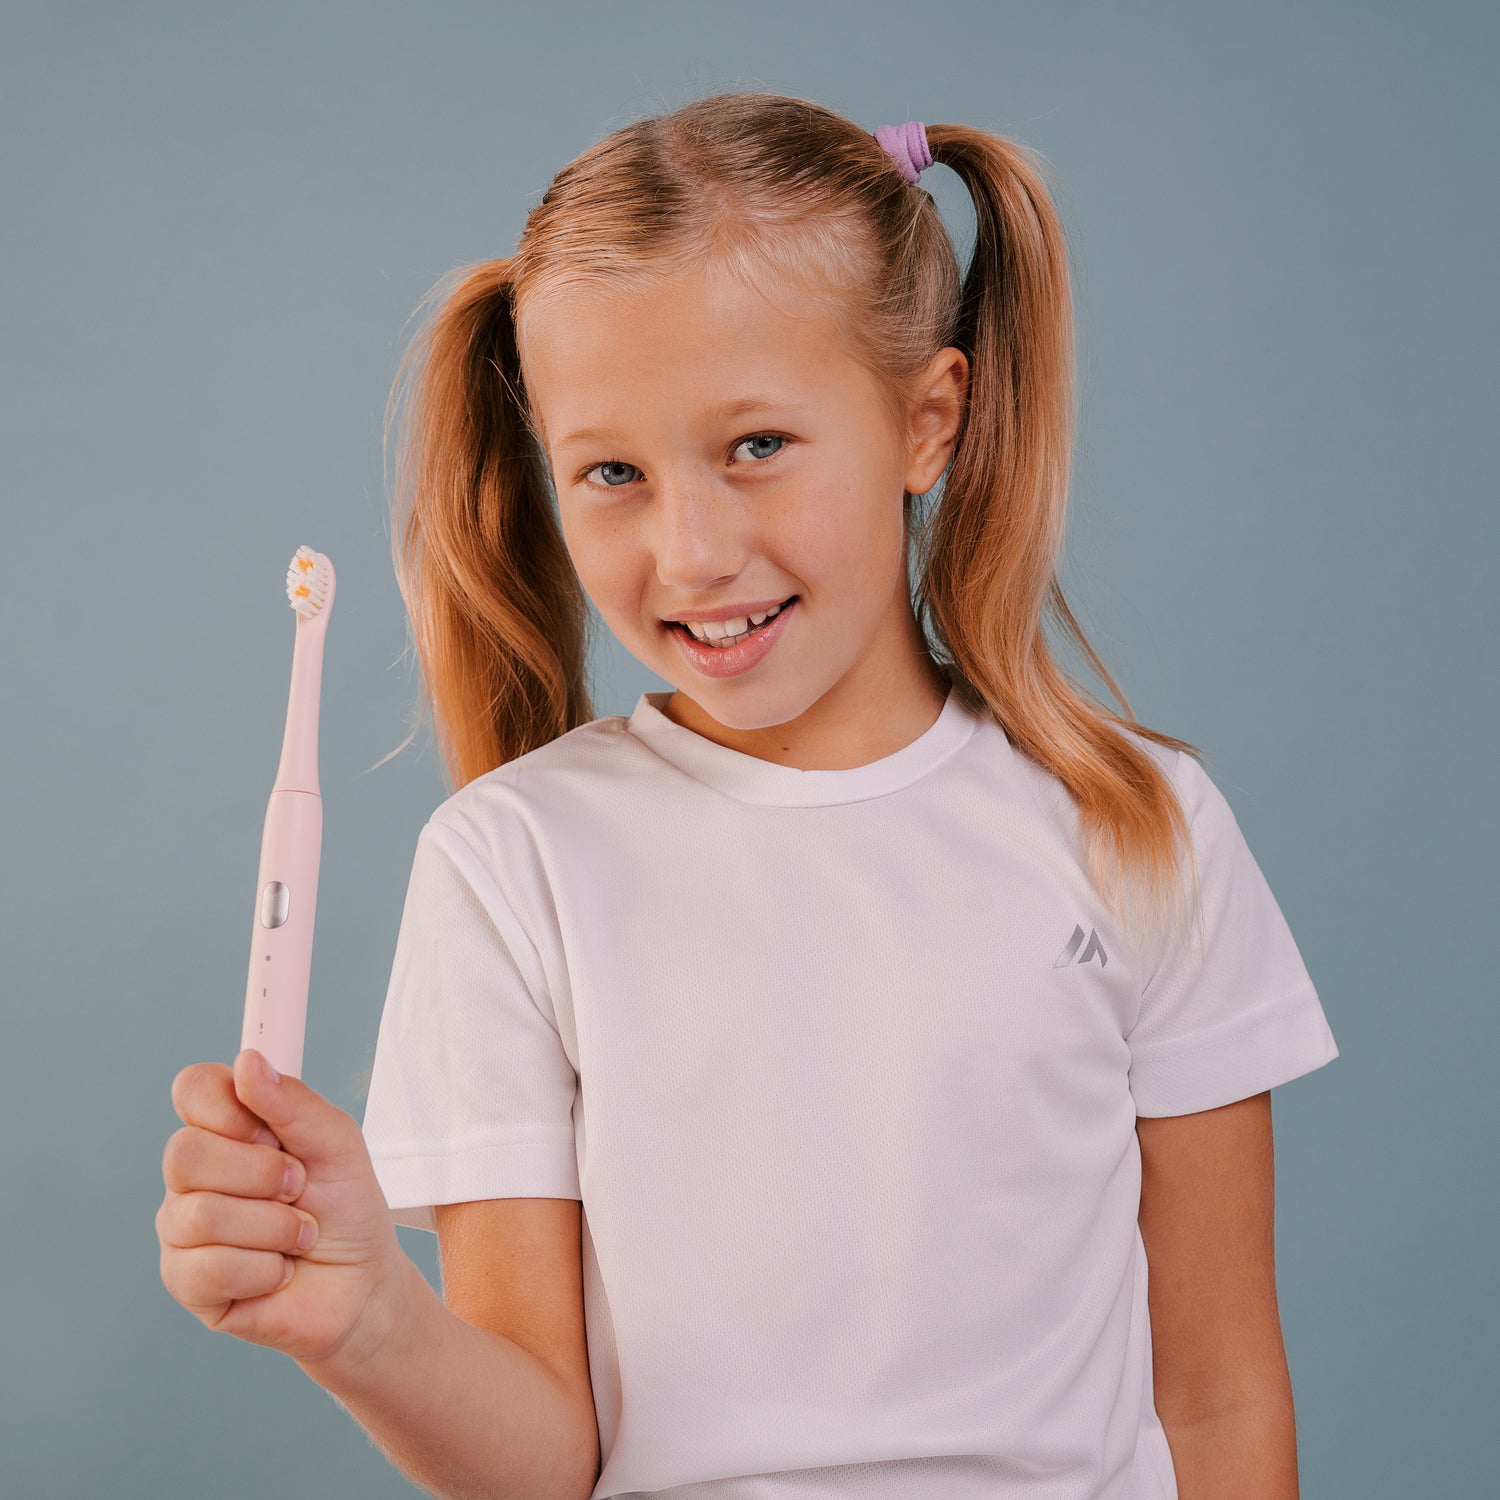 Электрическая зубная щетка Smiley Light Pink розовая электрическая зубная щетка купить купить электрощетку зубную купить электрощетку купити електричну зубну щітку електрична зубна щітка купити